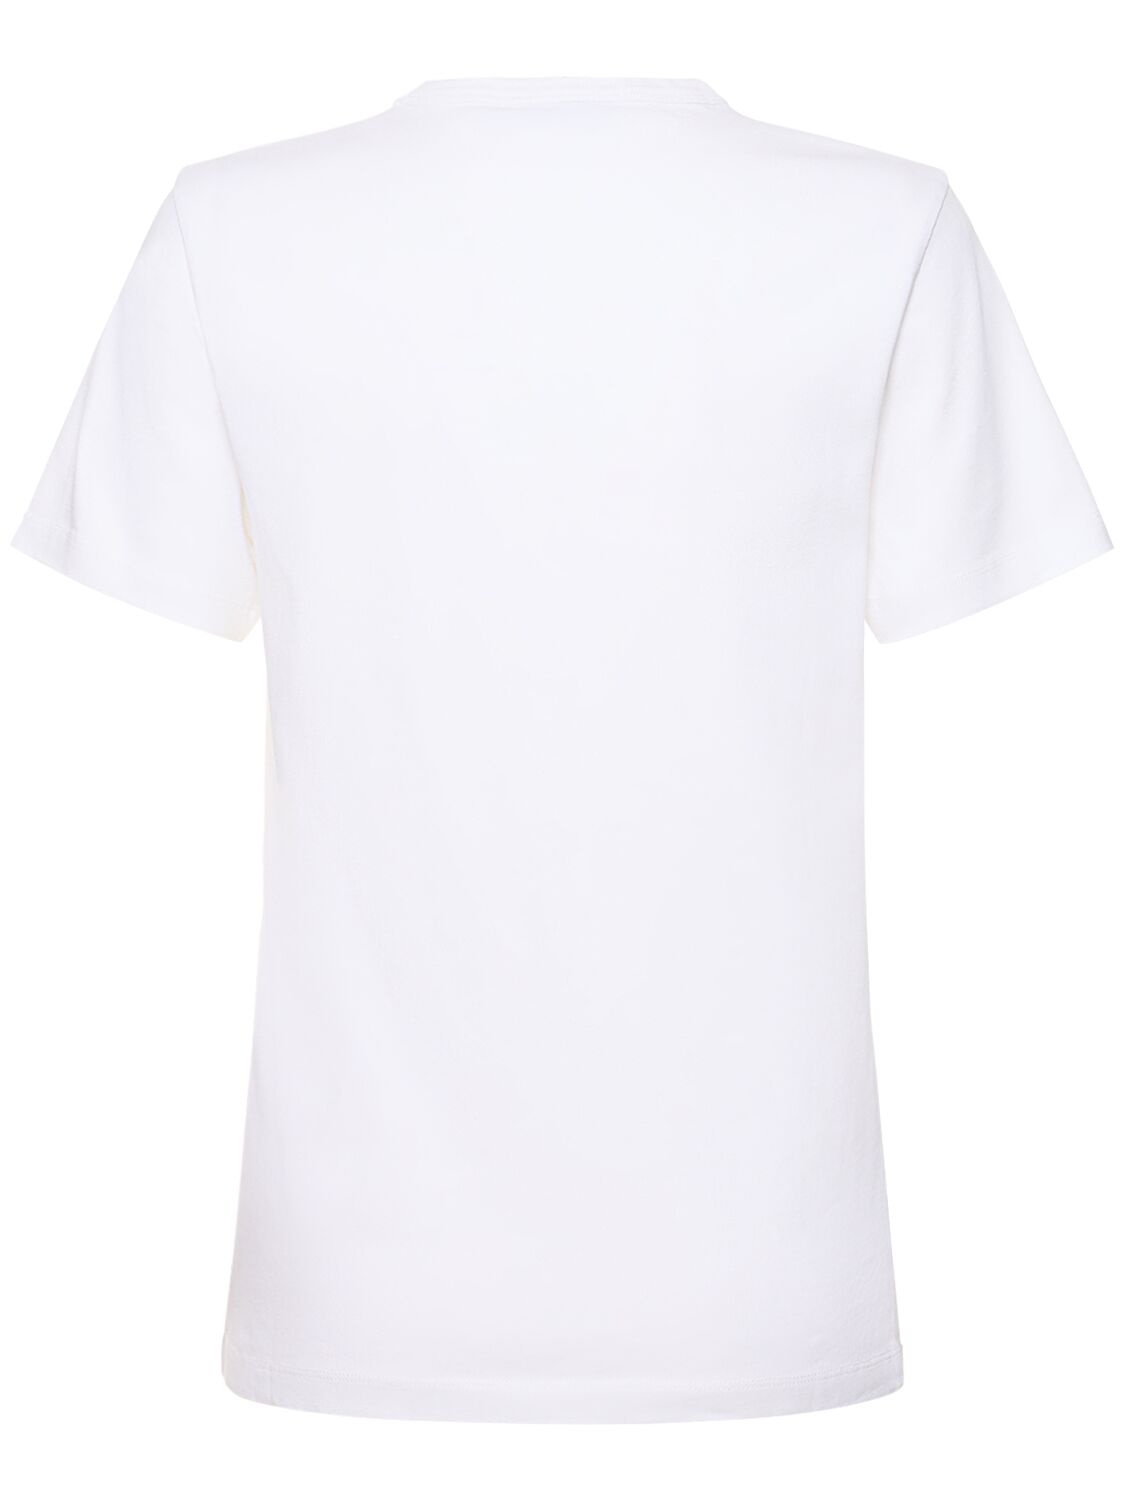 Shop Maison Kitsuné Campus Fox Classic Cotton T-shirt In White